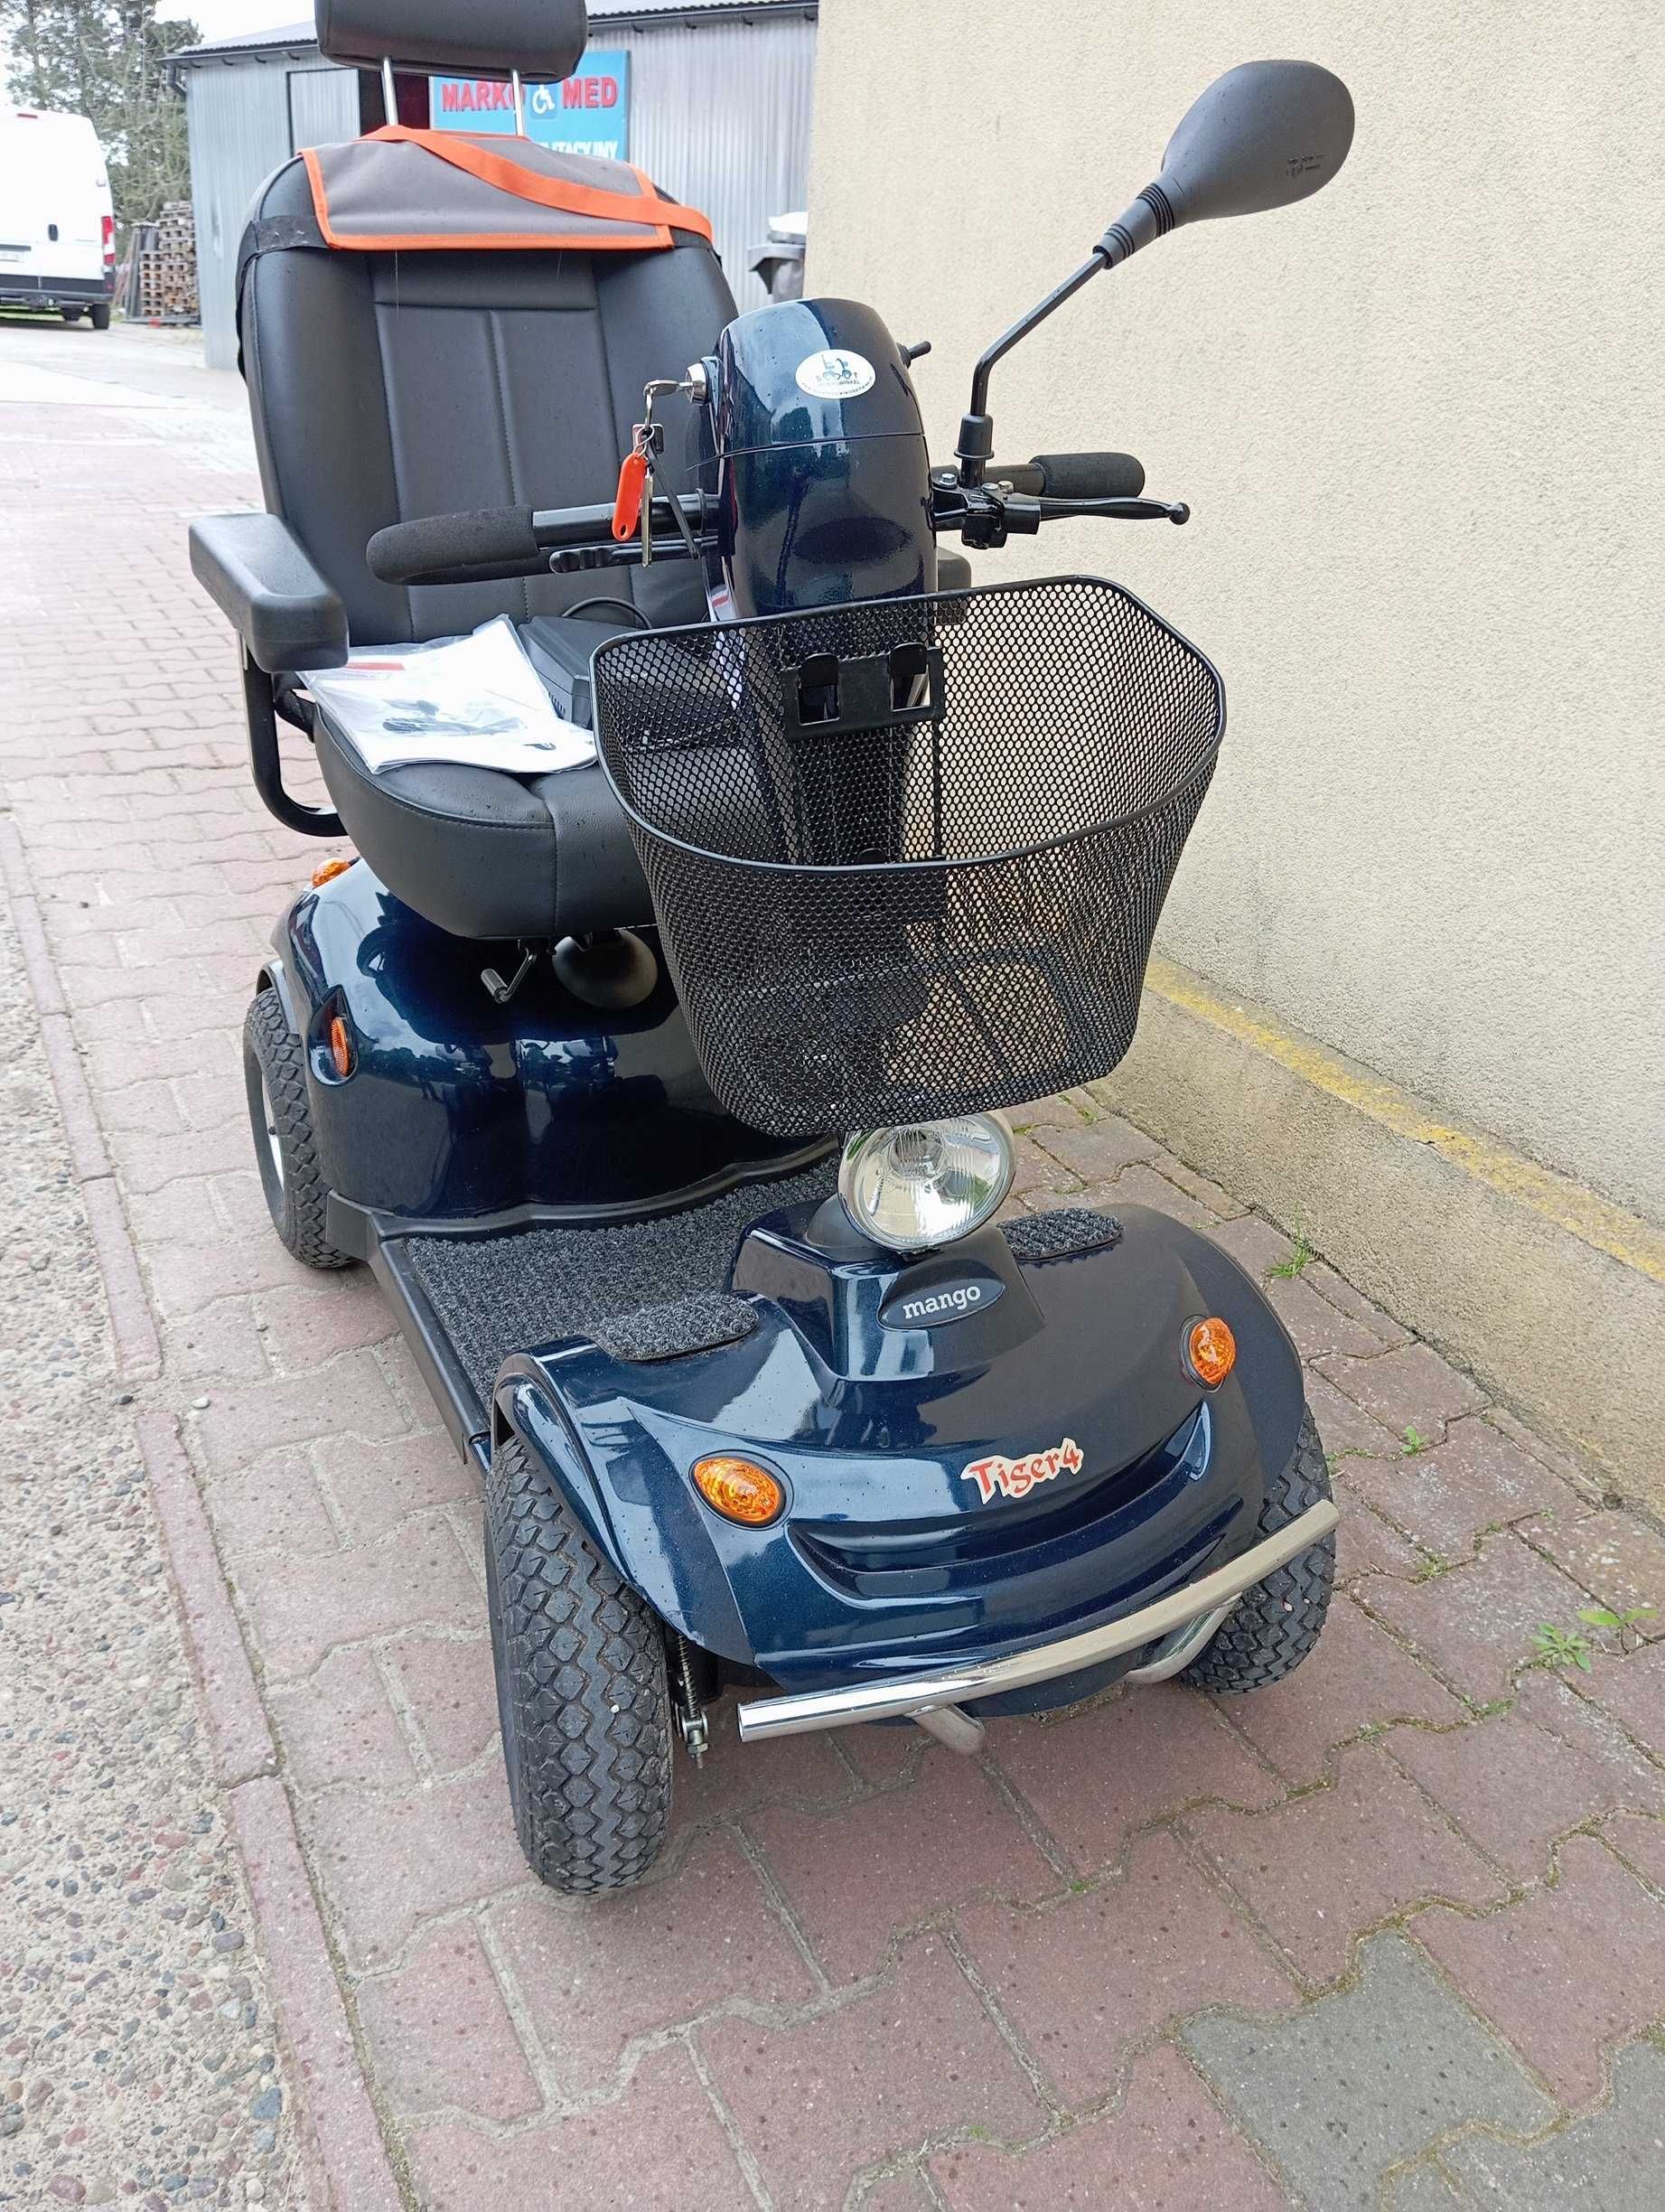 Wózek elektryczny skuter dla seniora Mango Tiger 4 2021 rok